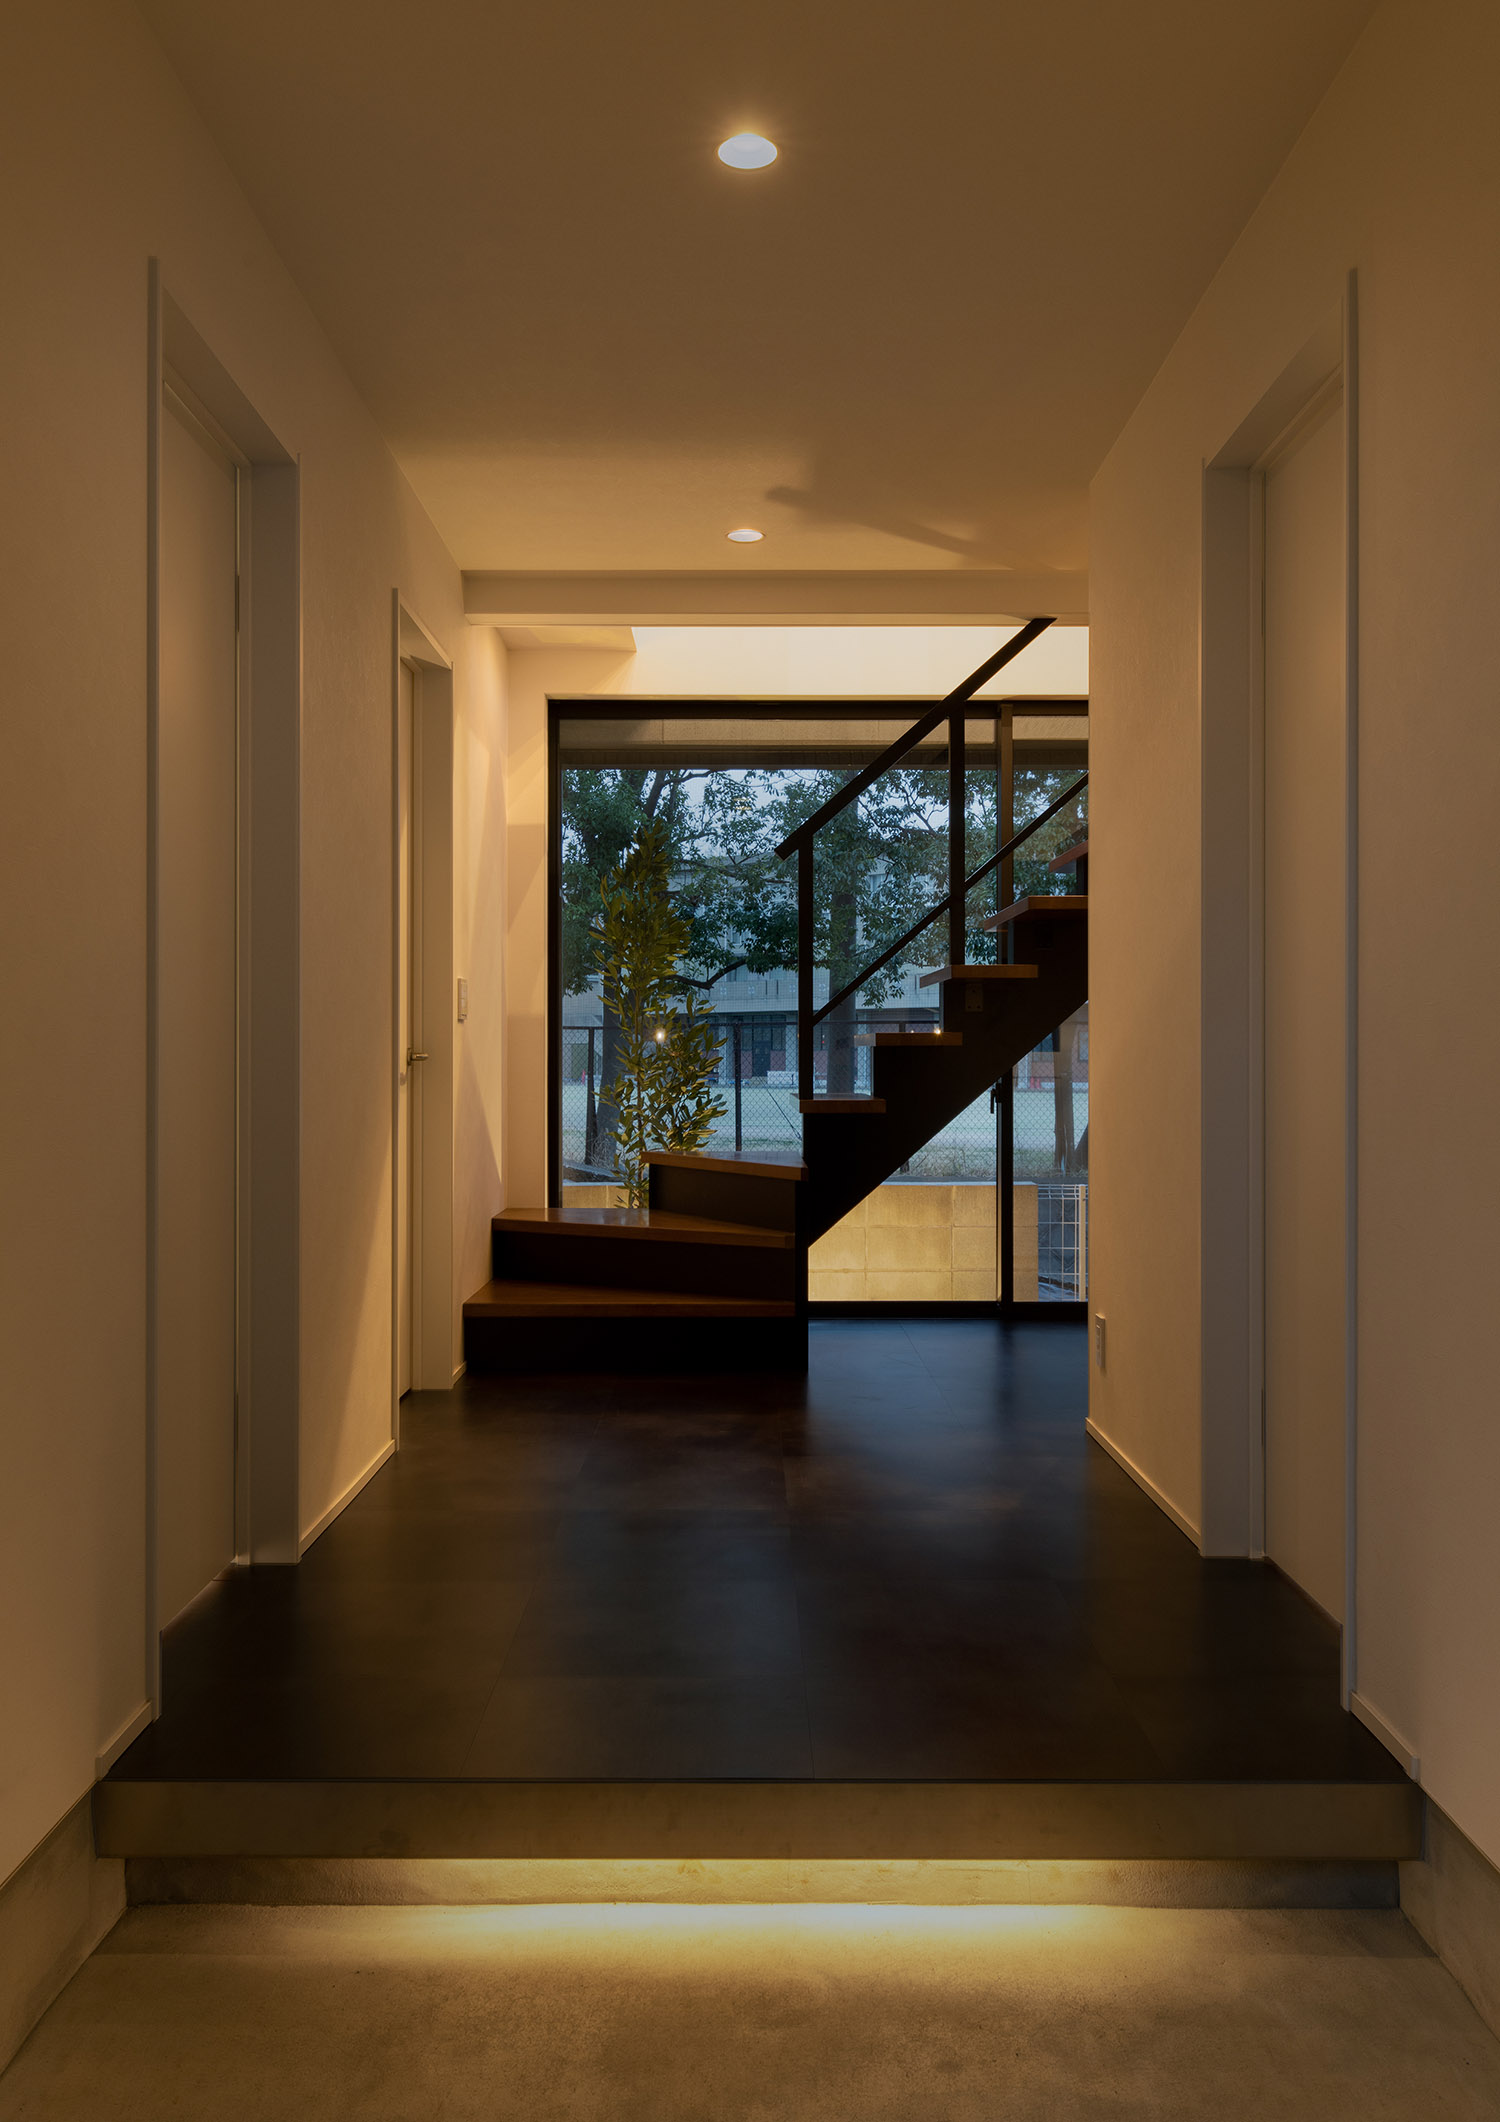 足元に間接照明が取り付けられ、正面にスケルトン階段がある玄関・デザイン住宅